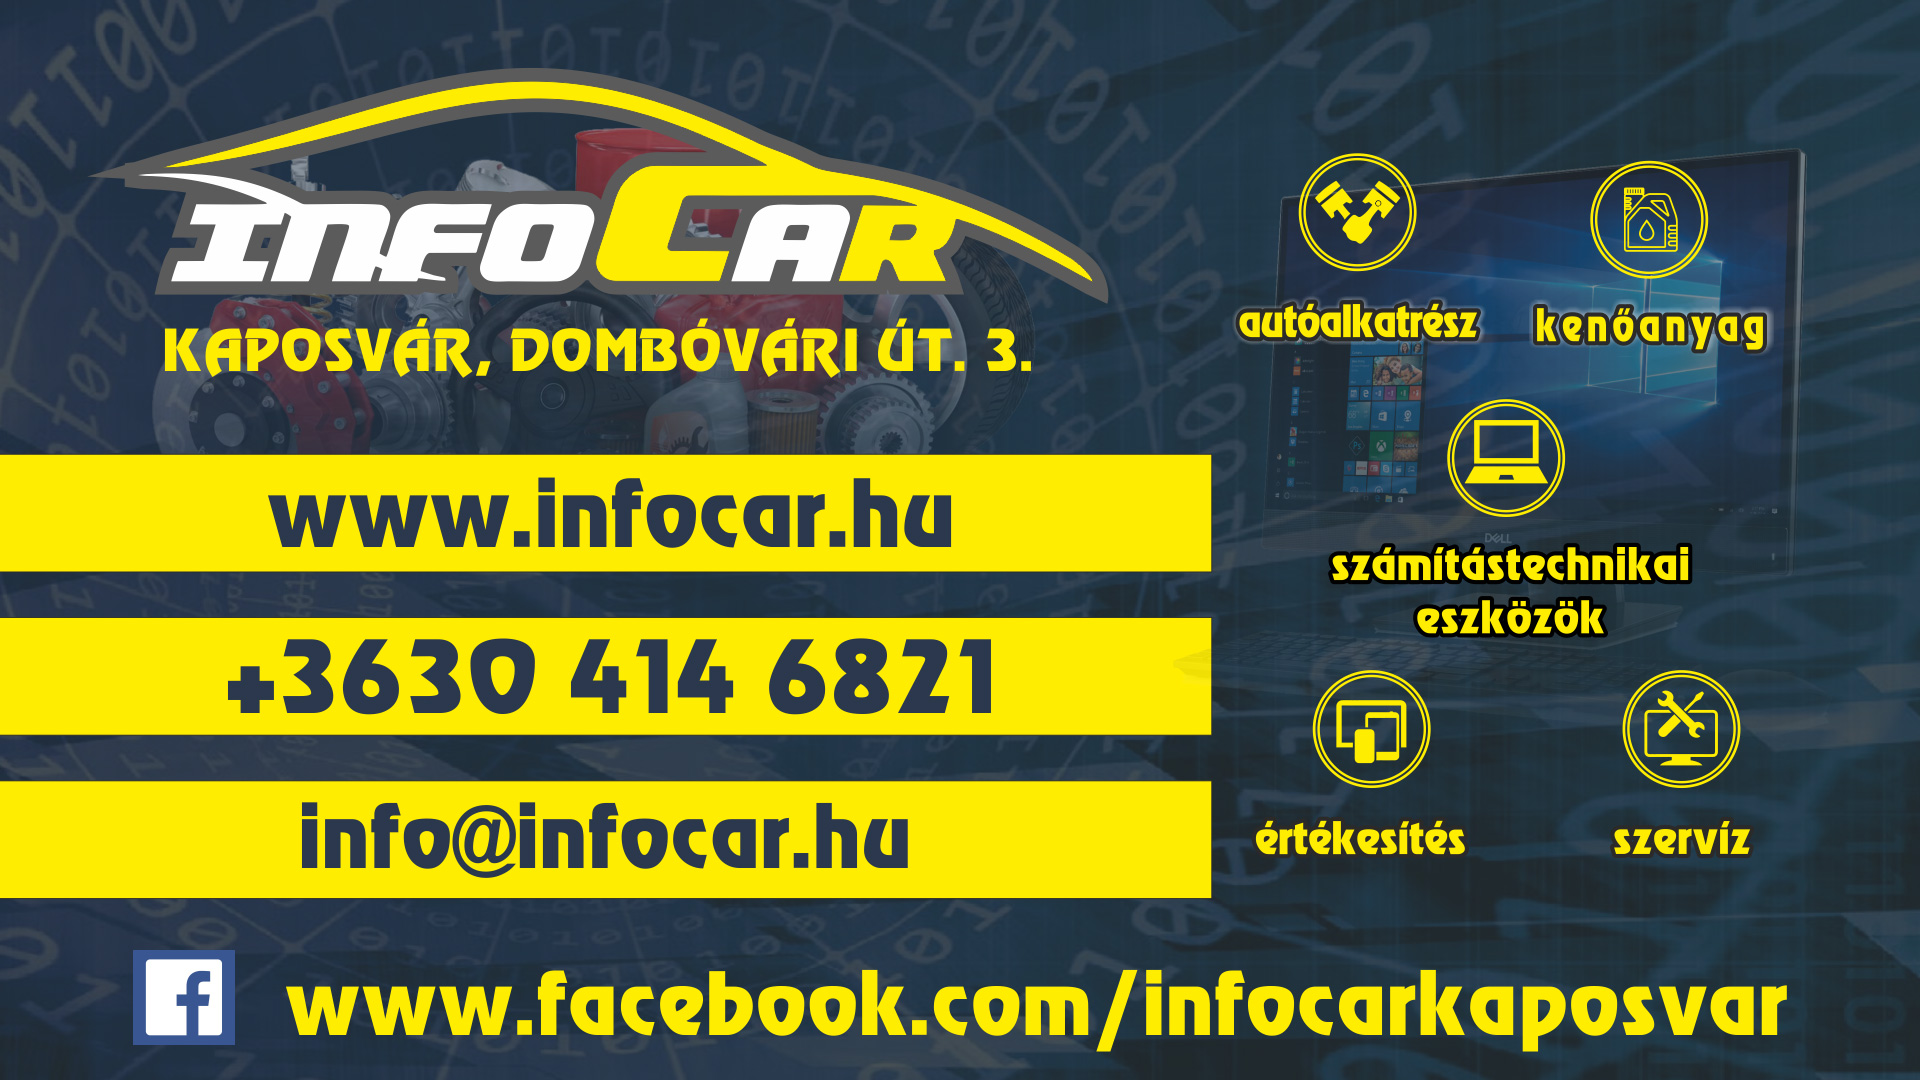 INFOCAR - autóalkatrész, kenőanyag, számítástechnikai eszközök, értékesítés, szervíz, kaposvár, +36 30 414 6821